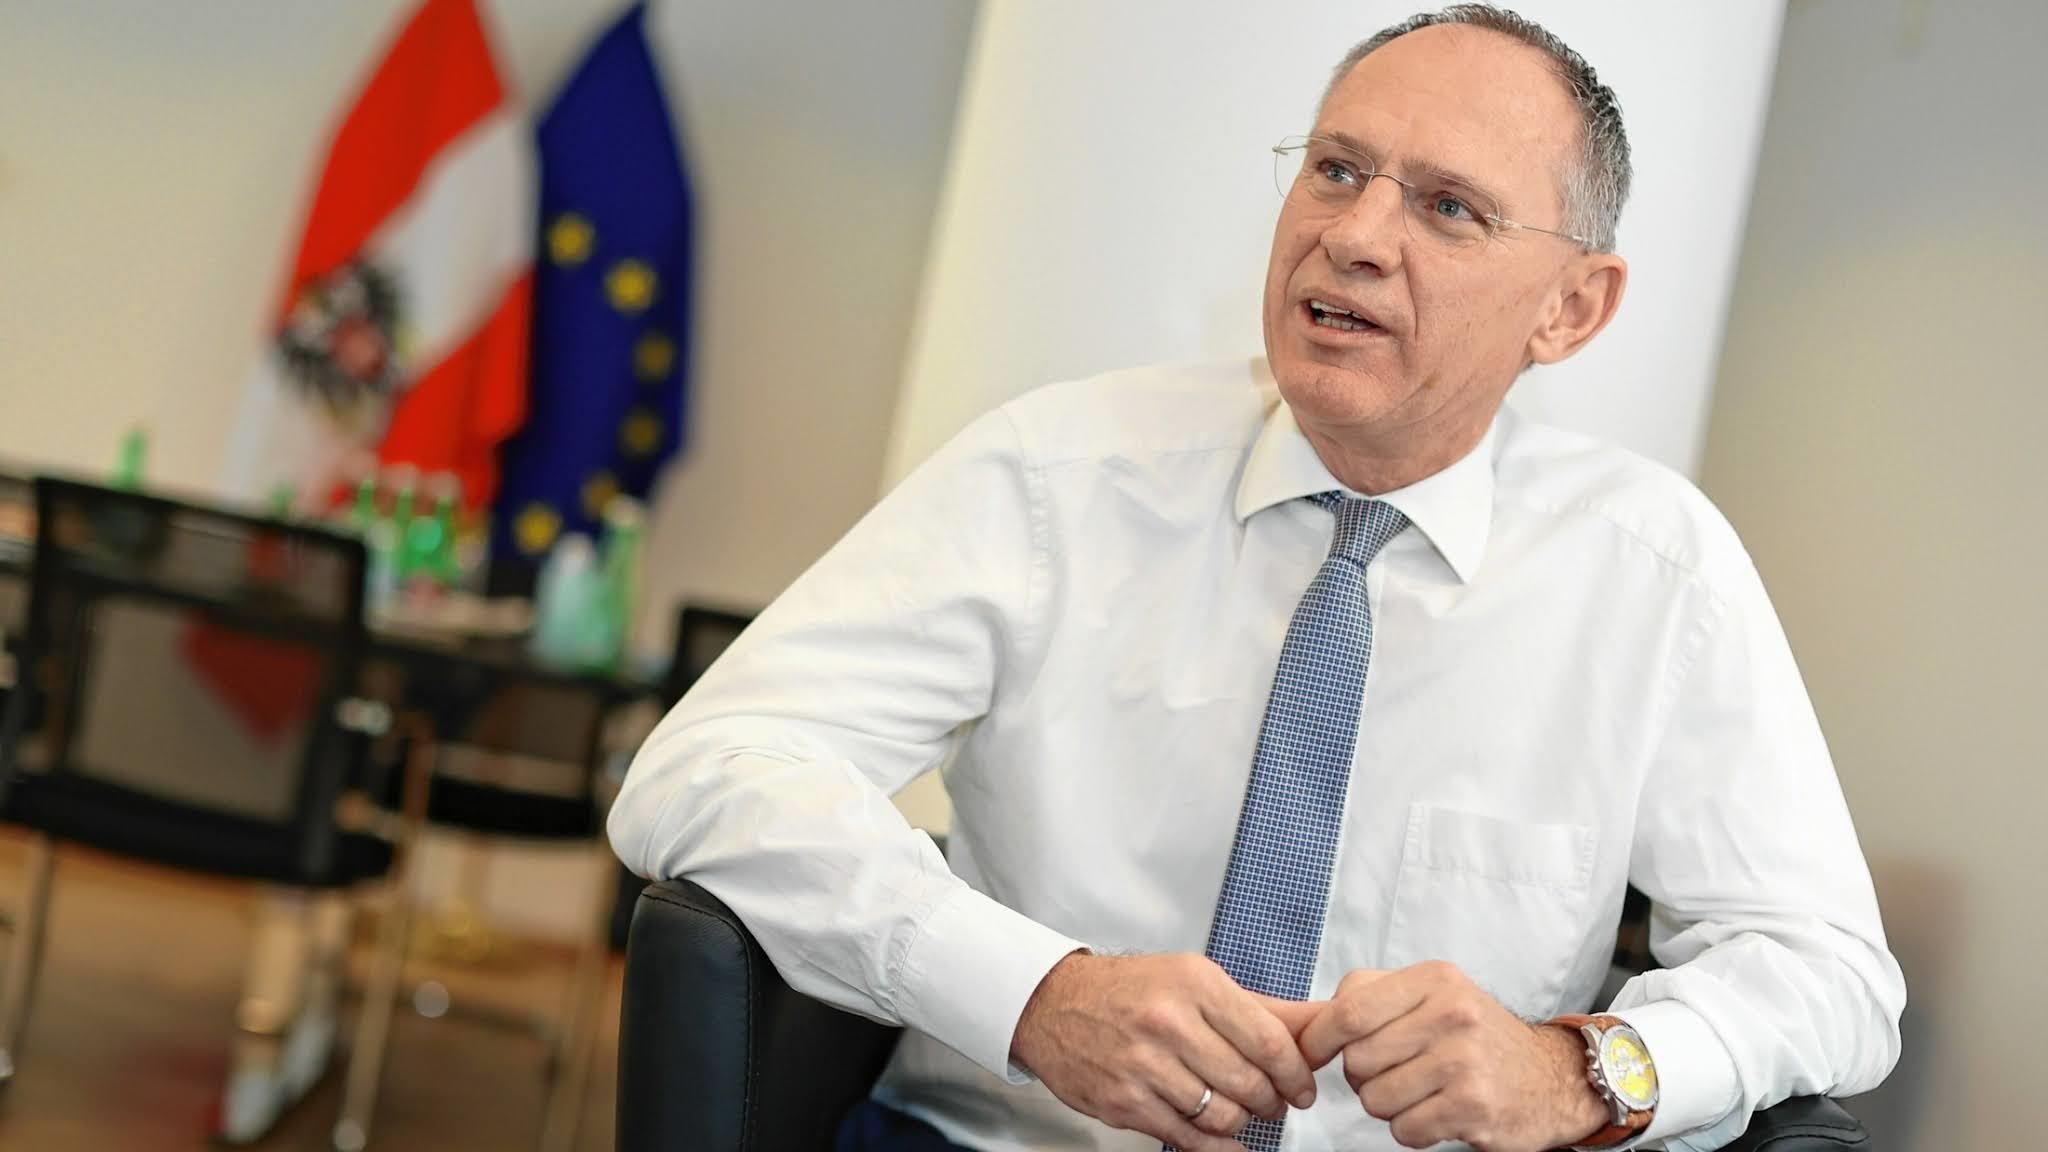 وزير داخلية النمسا: مطلوب اتباع نهج مشترك على المستوى الأوروبي للحد من اللجوء